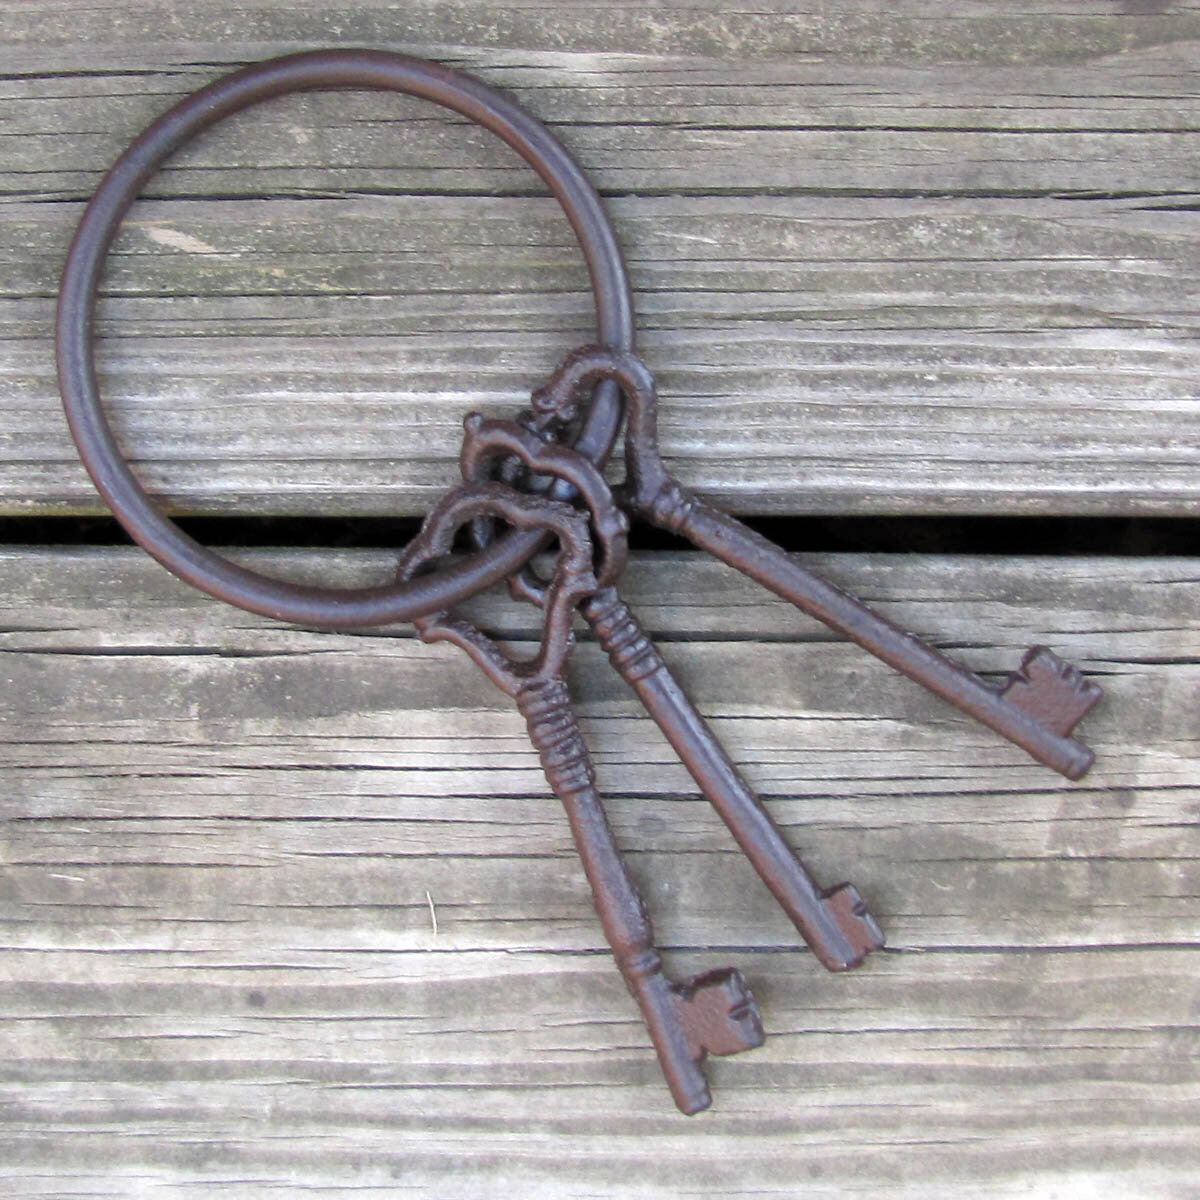 Vintage reproduction cast iron prison/ jail keys